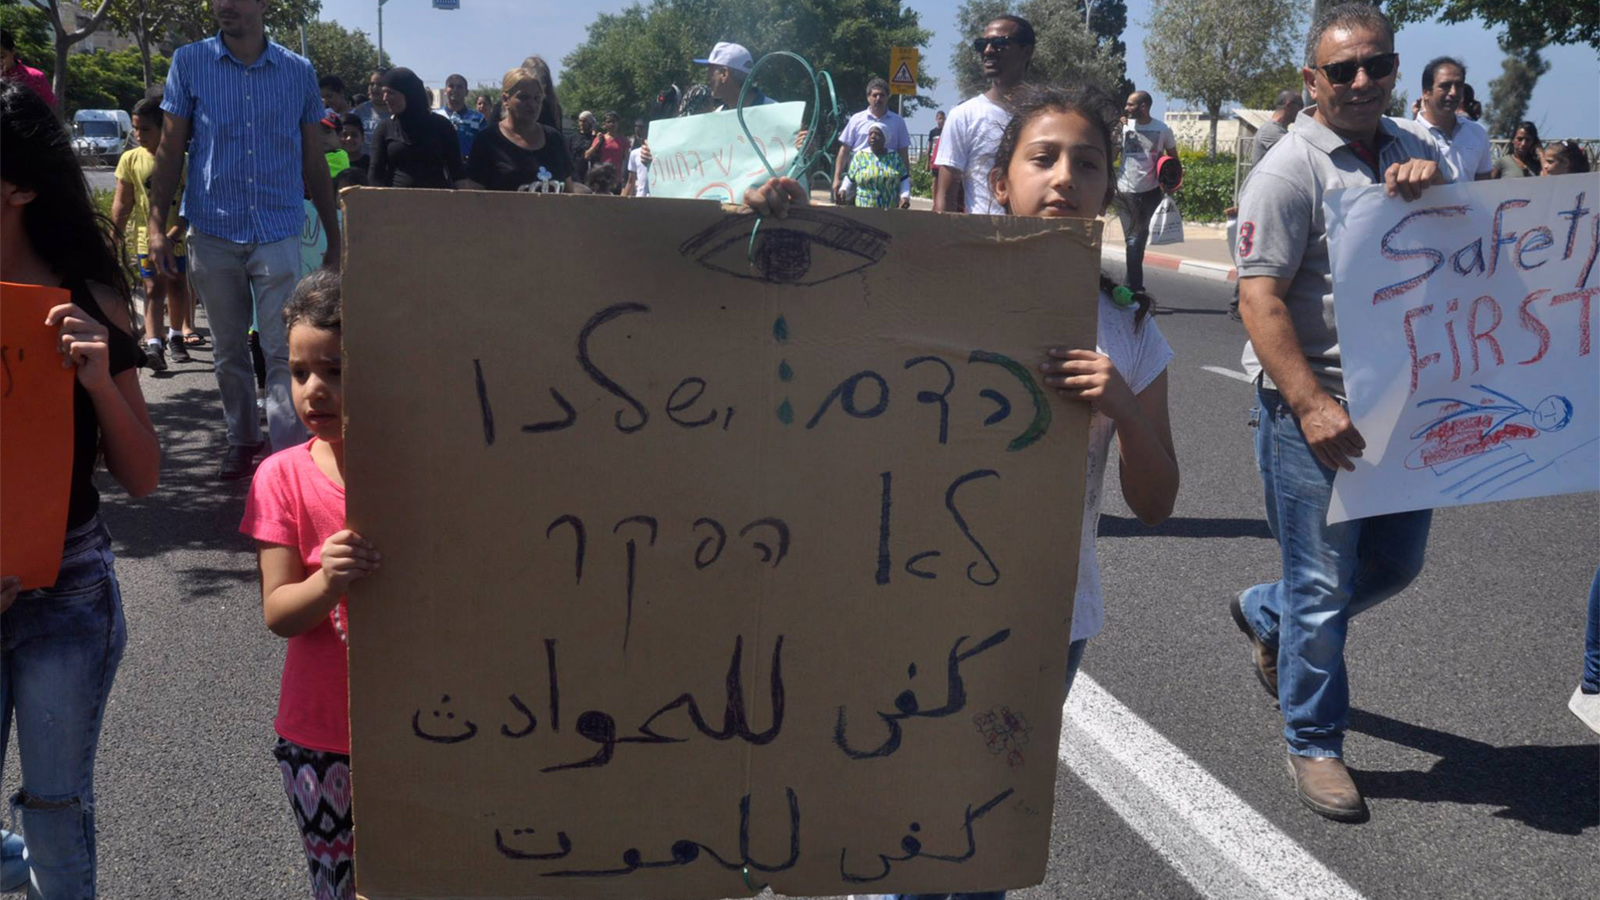 הפגנה בכביש הדמים ברח' אבן גבירול, שכונת הדר, חיפה, יוני 2017 (צילום: יעקב סבן).